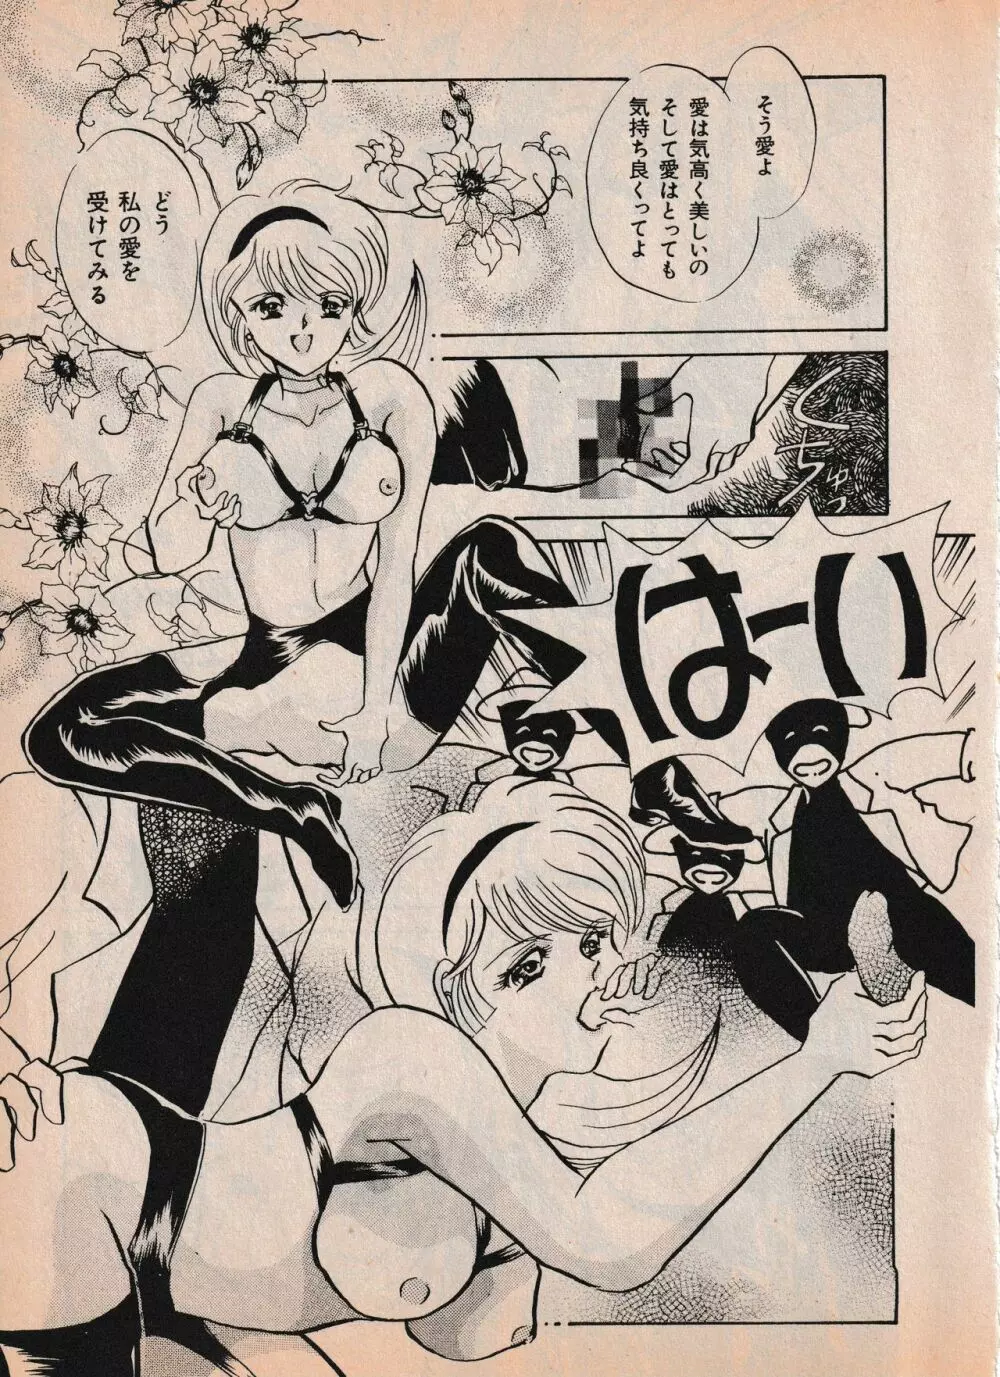 Sailor X vol. 4 – Sailor X vs. Cunty Horny! 74ページ